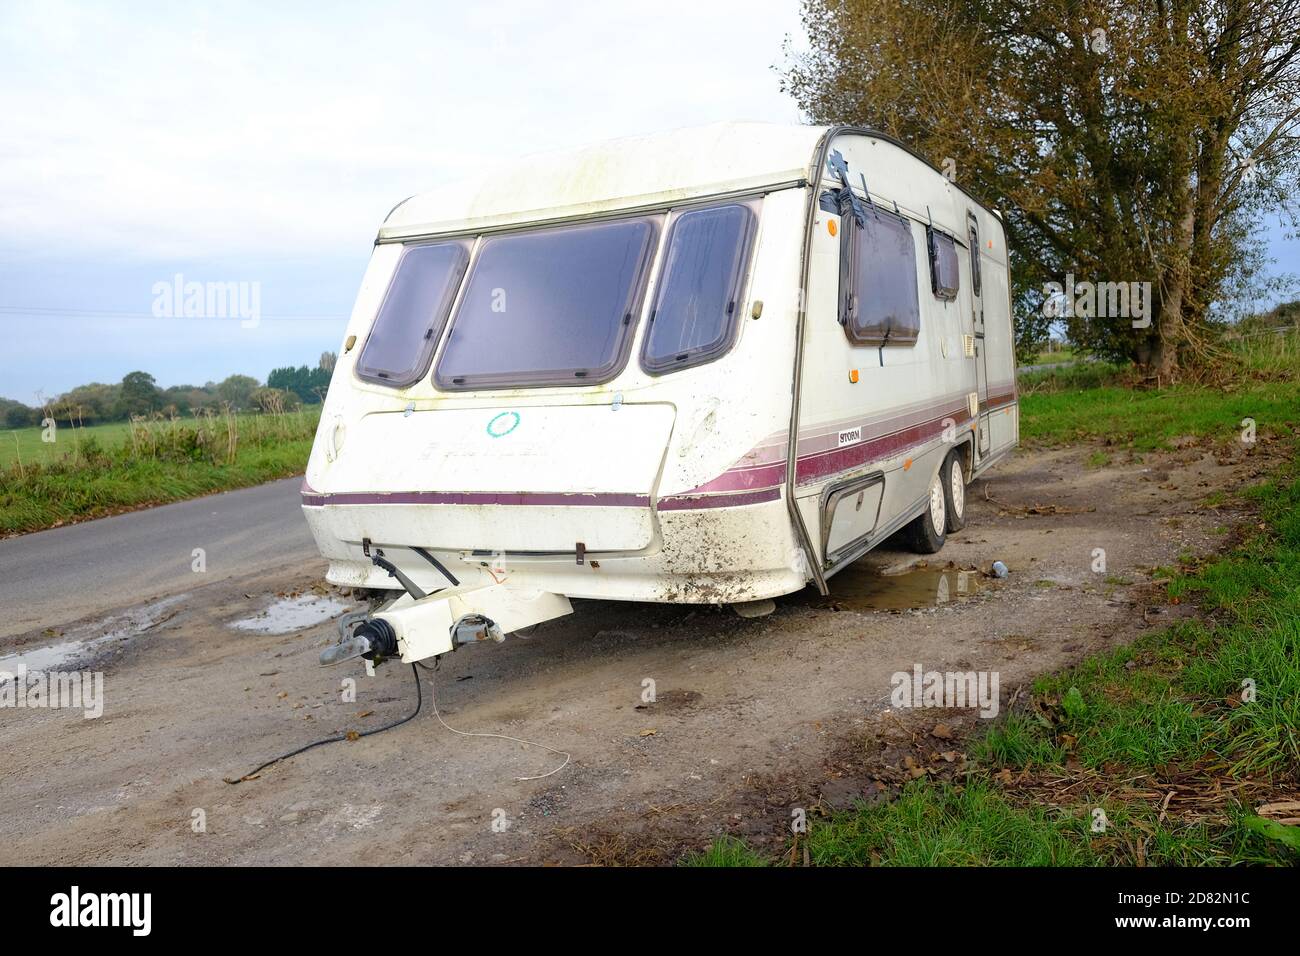 October 2020 - Large touring caravan abandoned on the road side near Glastonbury, Somerset, UK, Stock Photo